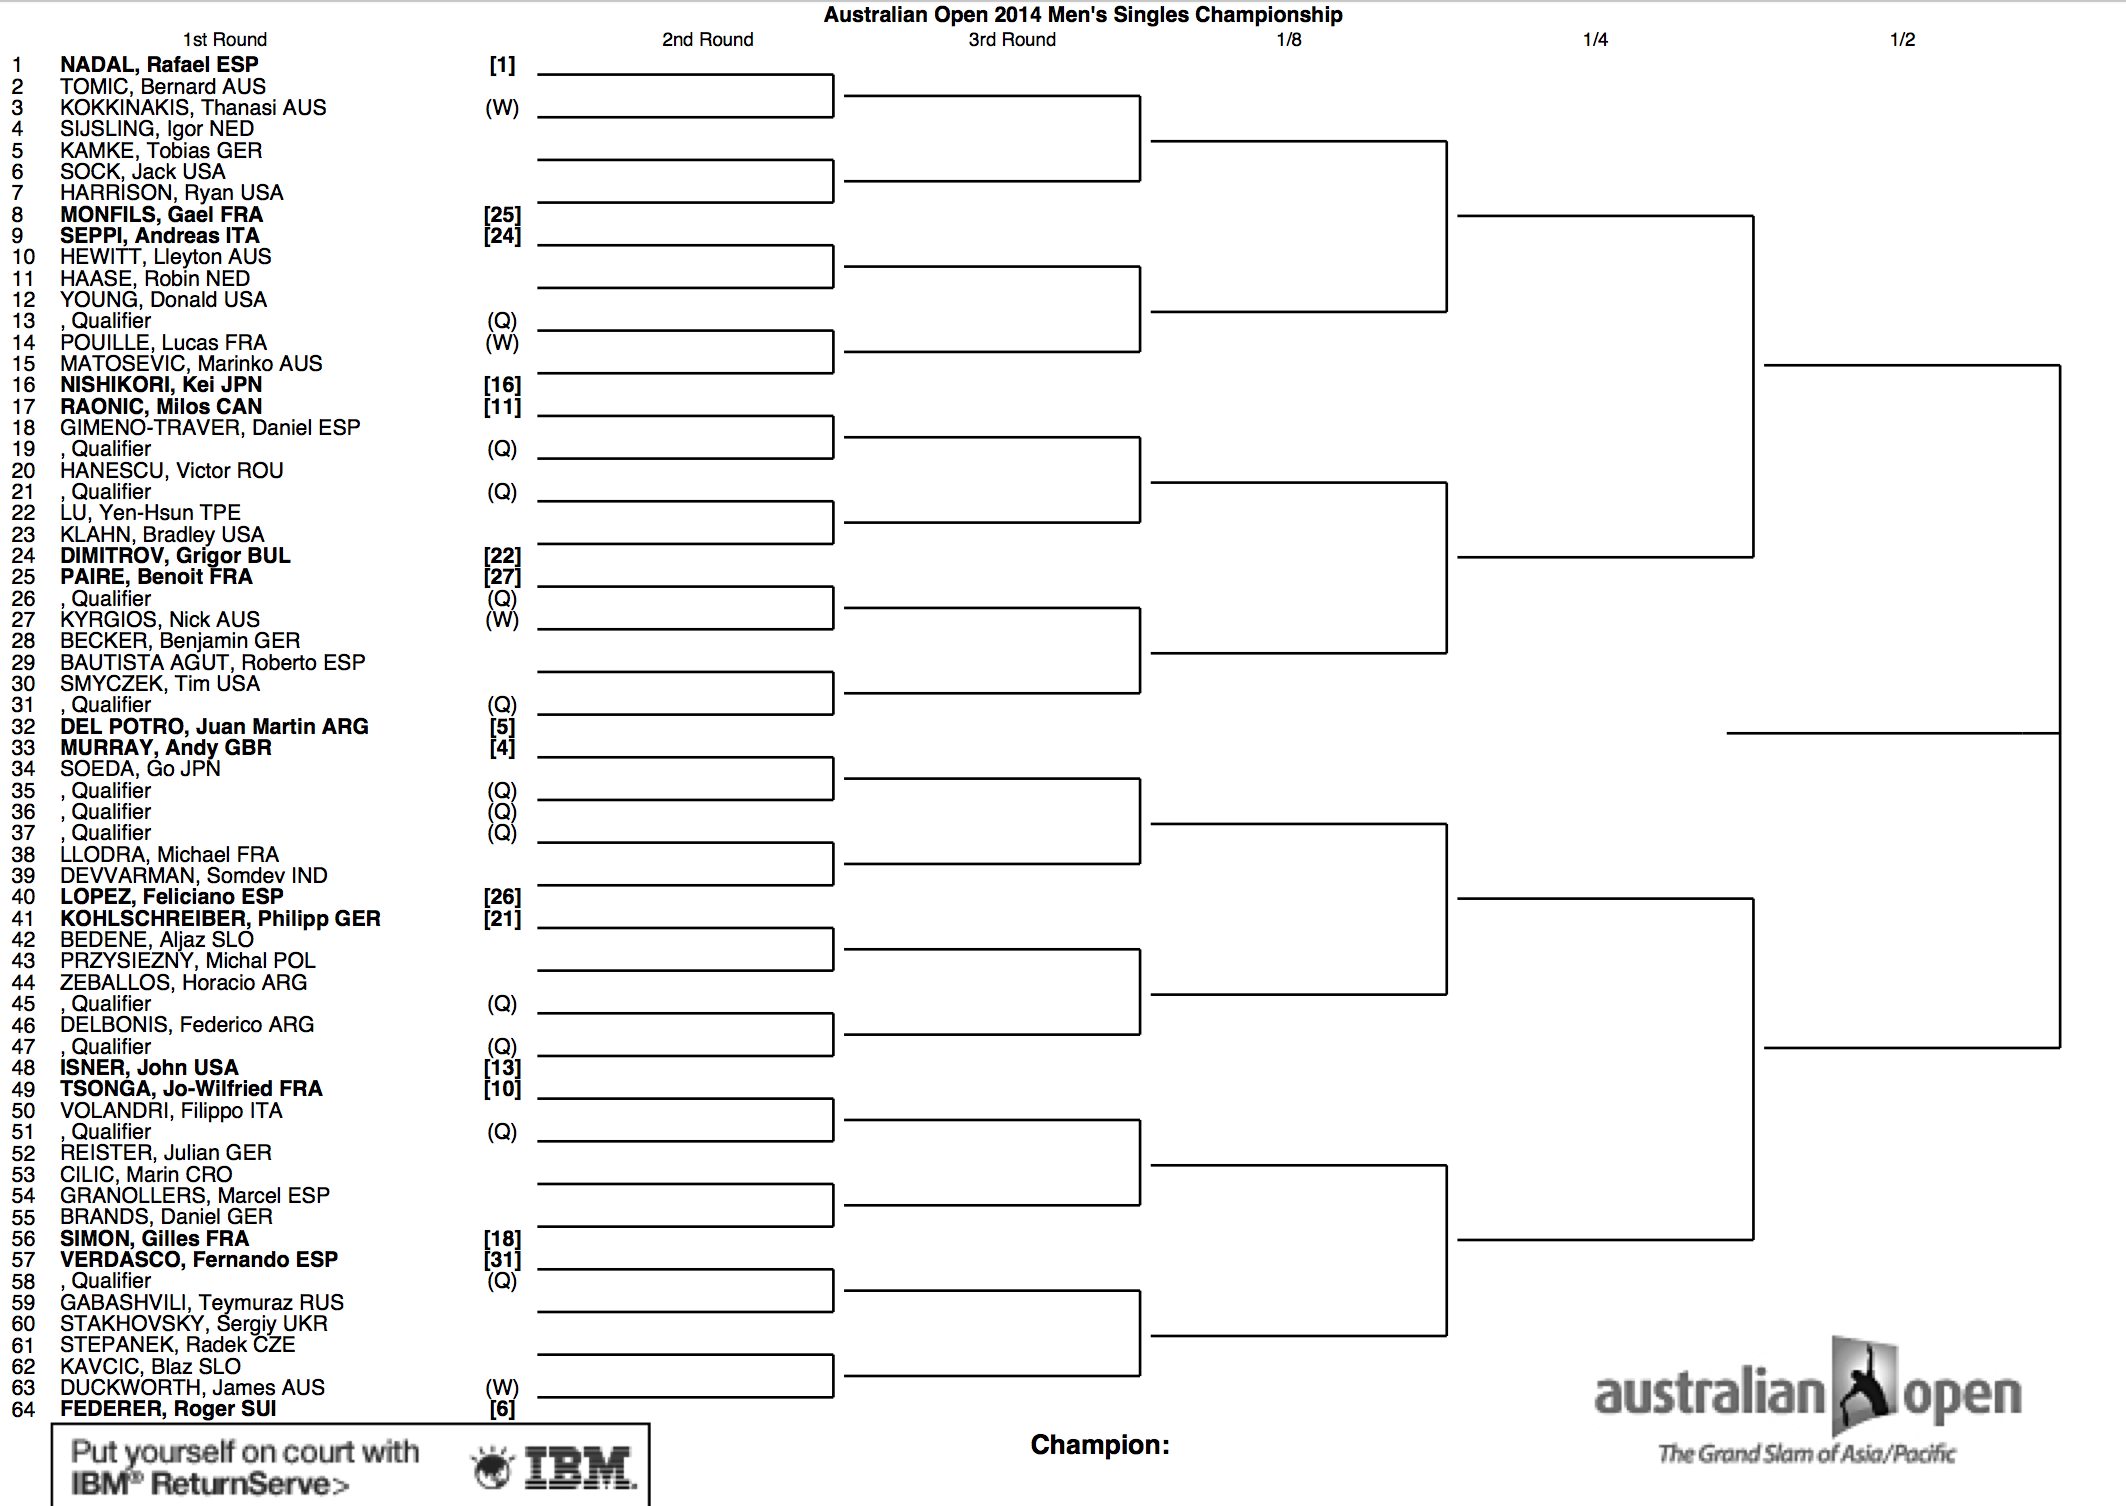 Australian Open 2014 Draw 1:2